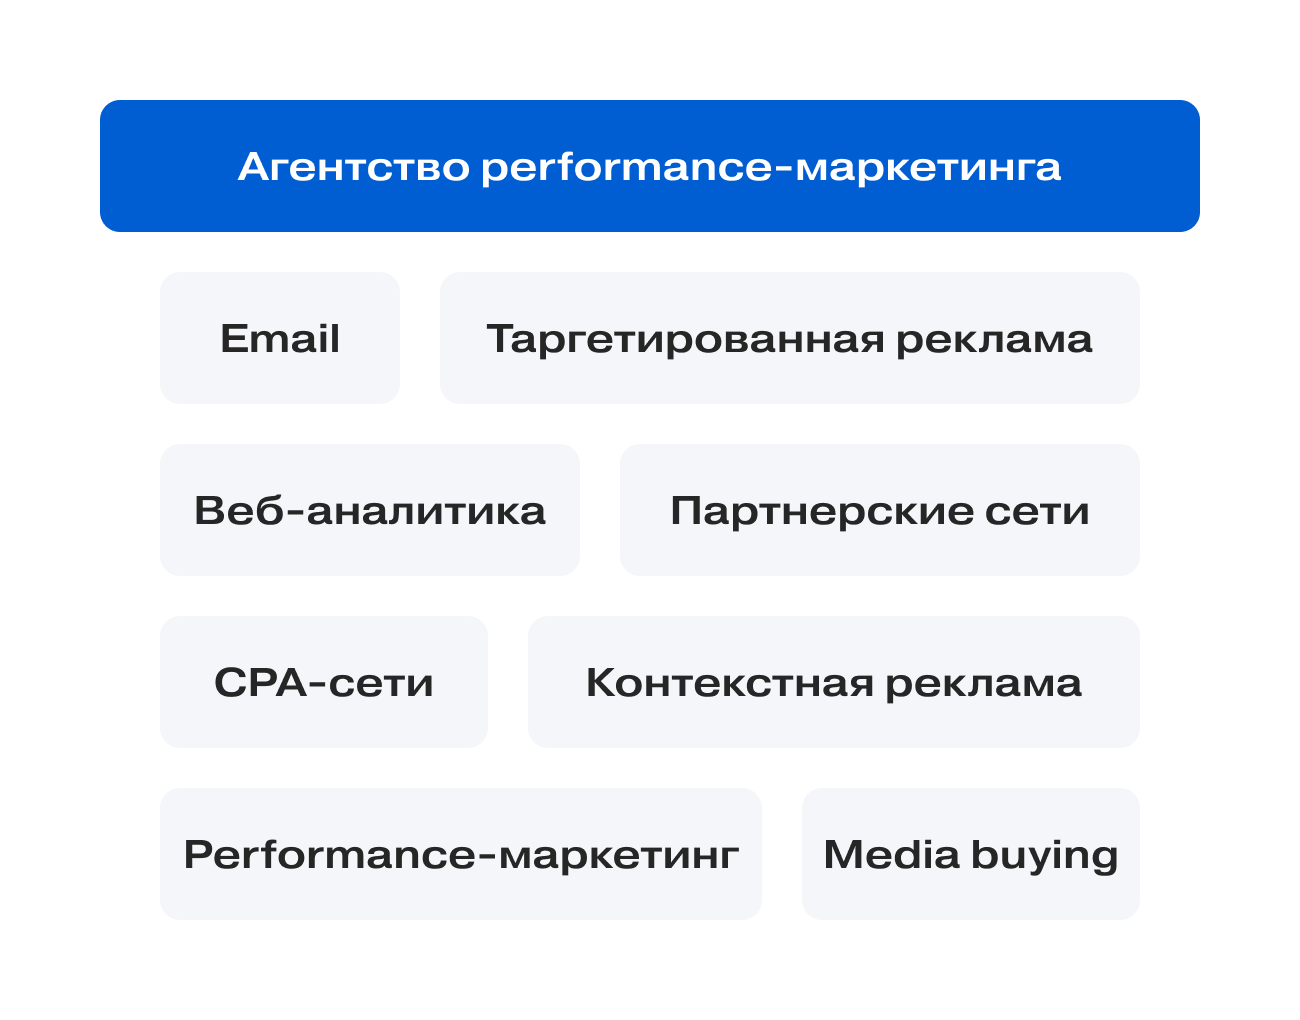 Пример направлений, которые охватывают агентства performance-маркетинга